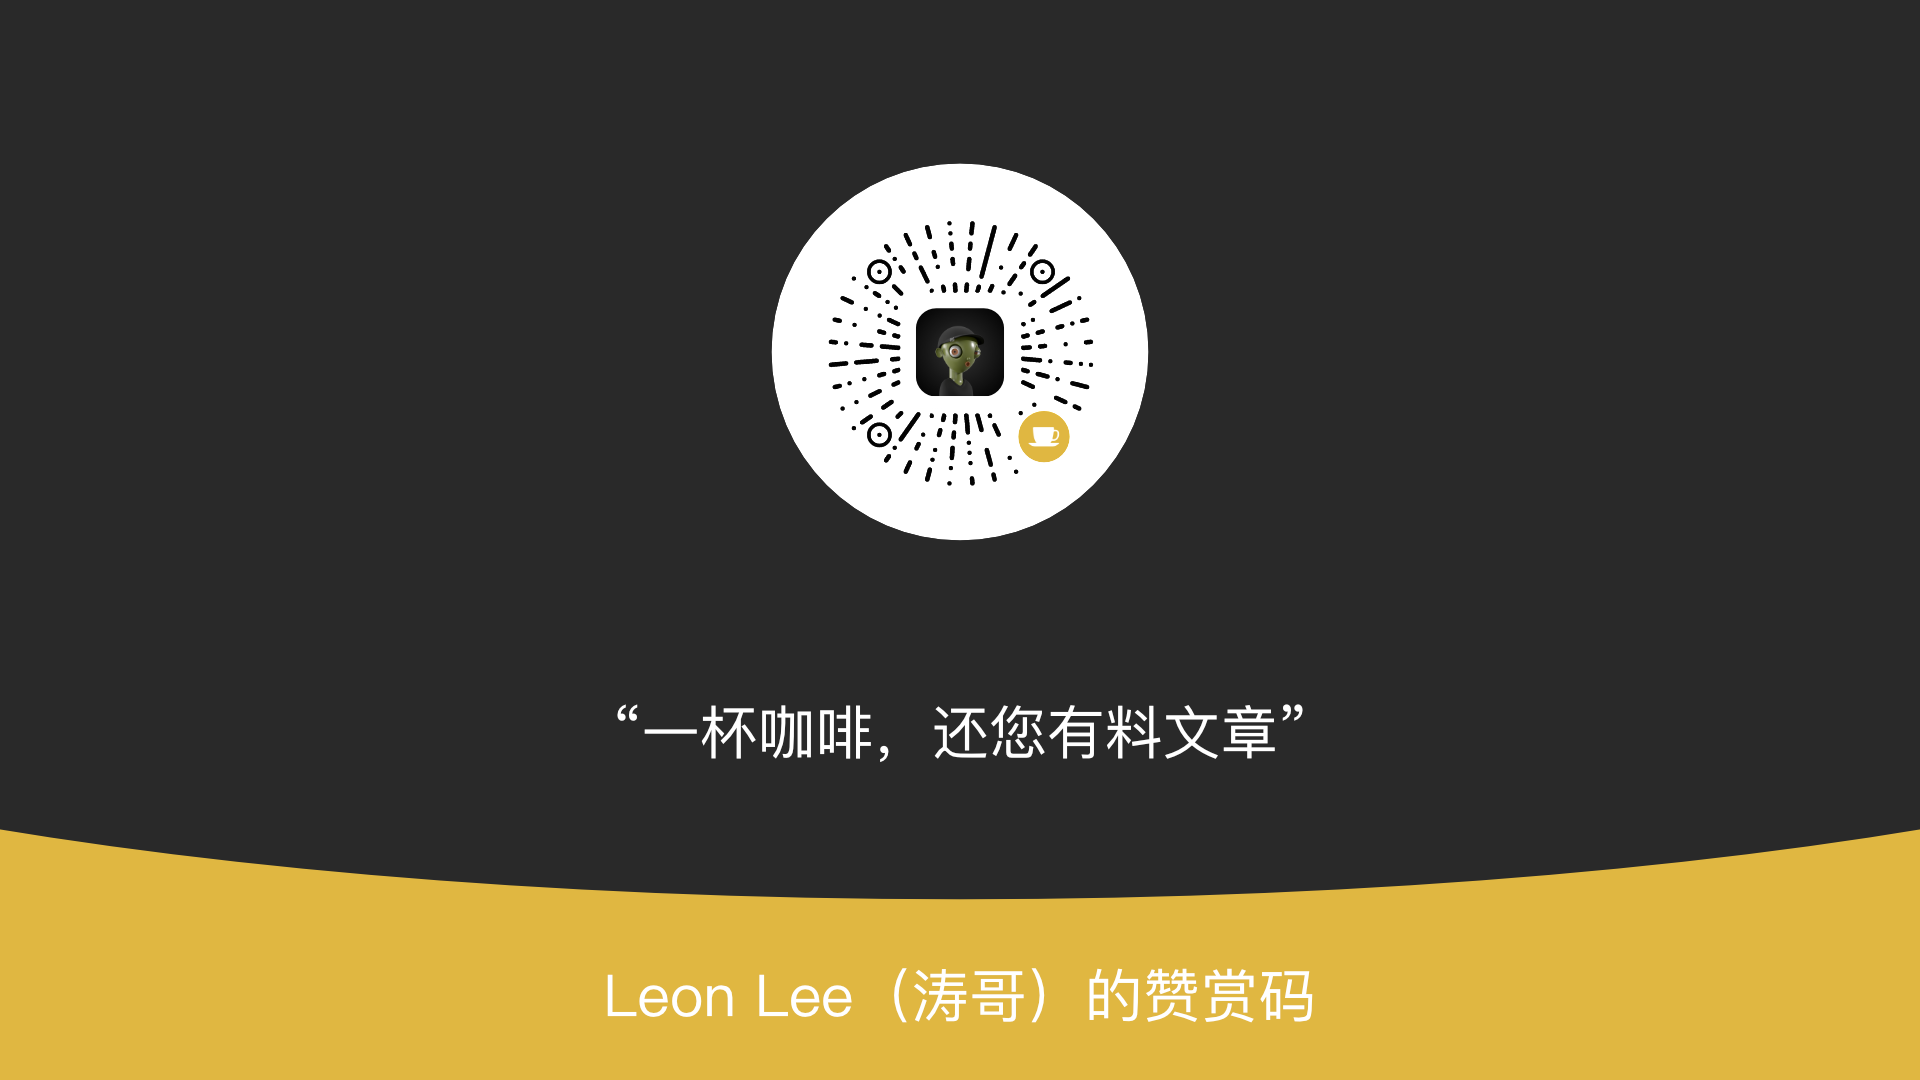 Leon Lee（涛哥）的赞赏码.png